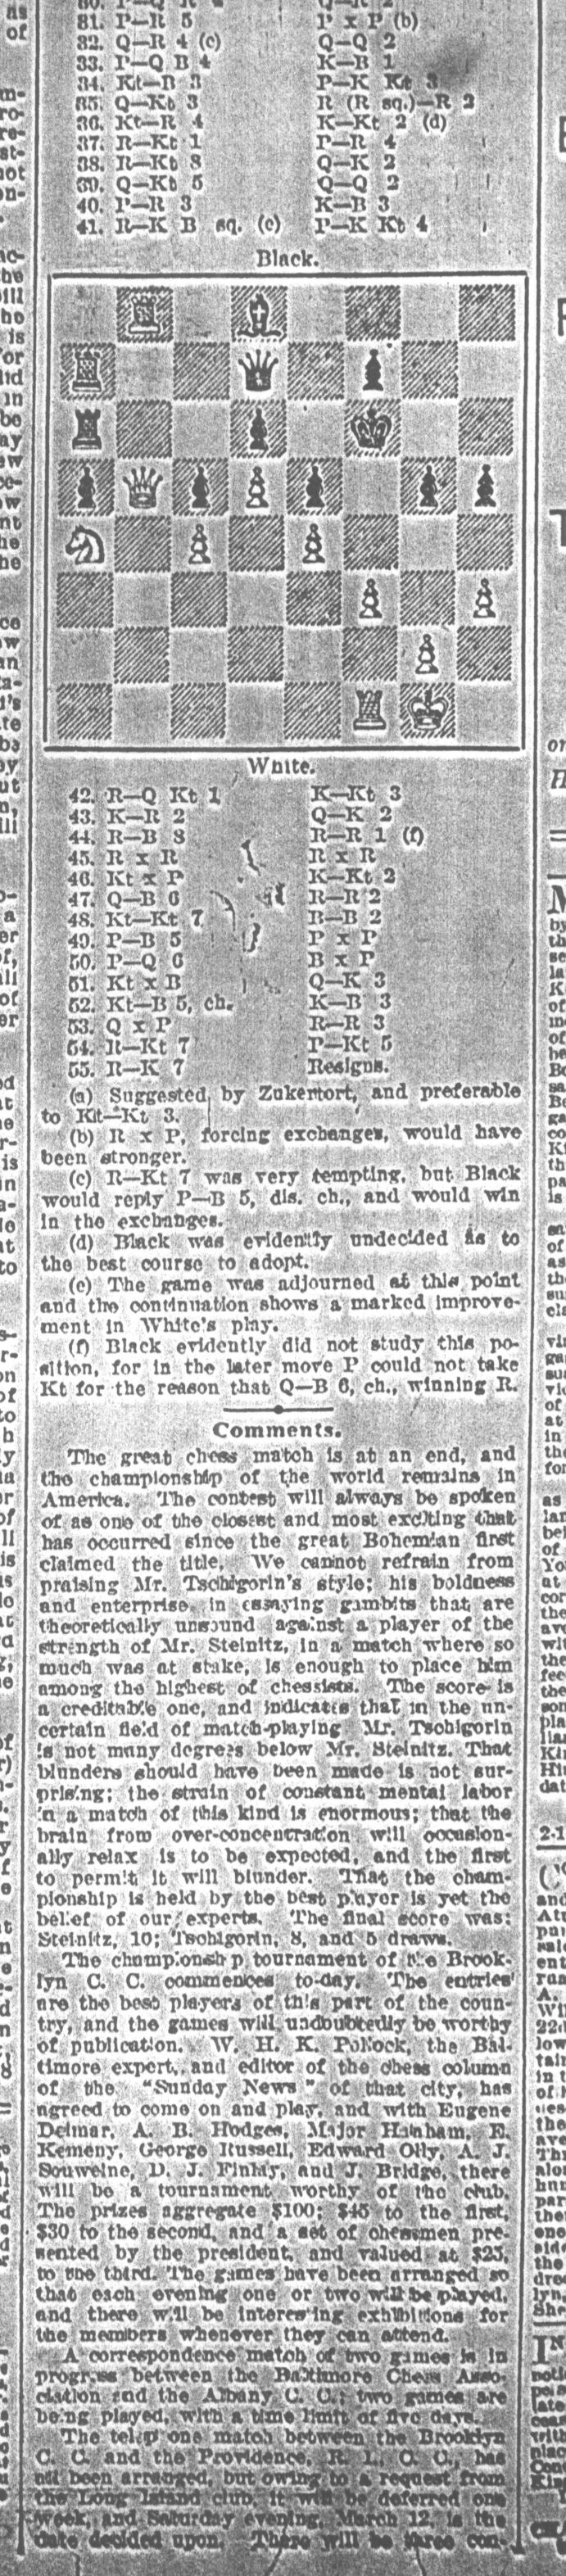 1892.03.05-02 Brooklyn Daily Standard-Union.jpg